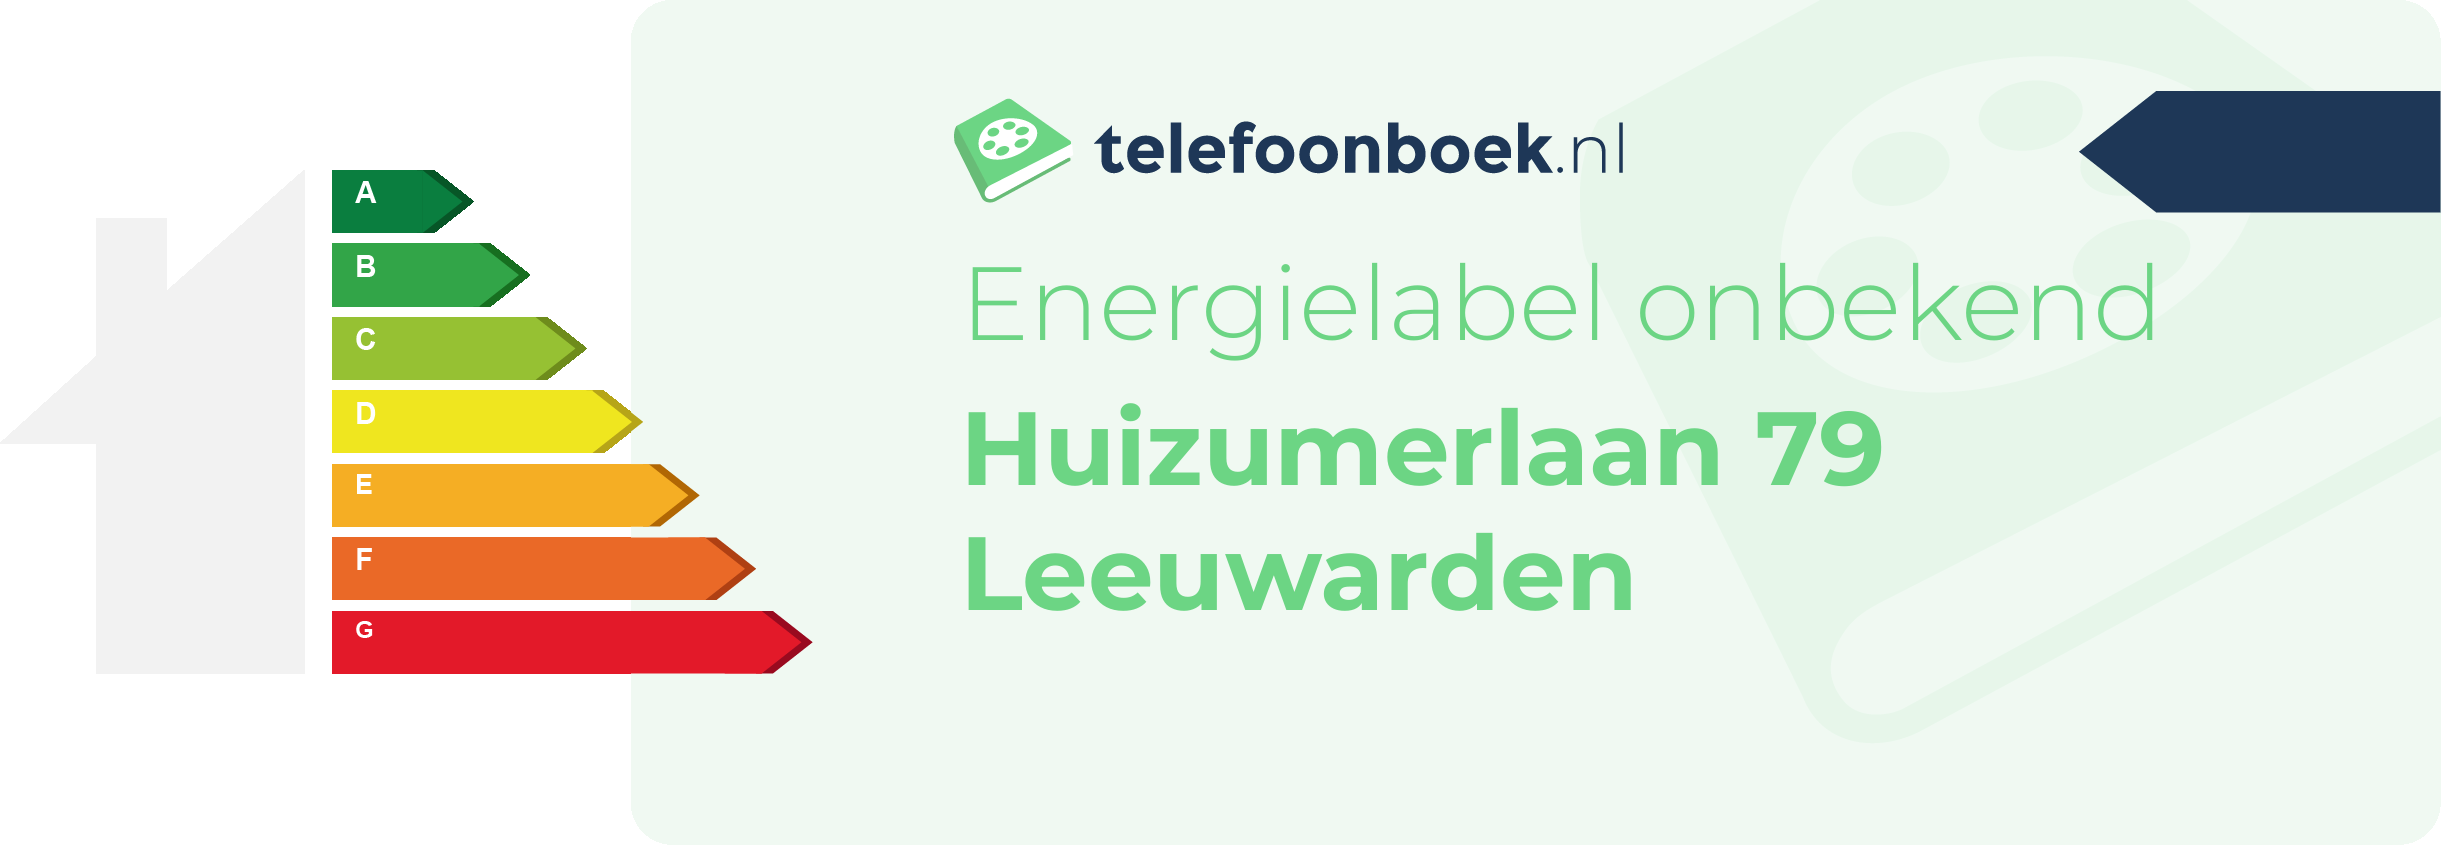 Energielabel Huizumerlaan 79 Leeuwarden